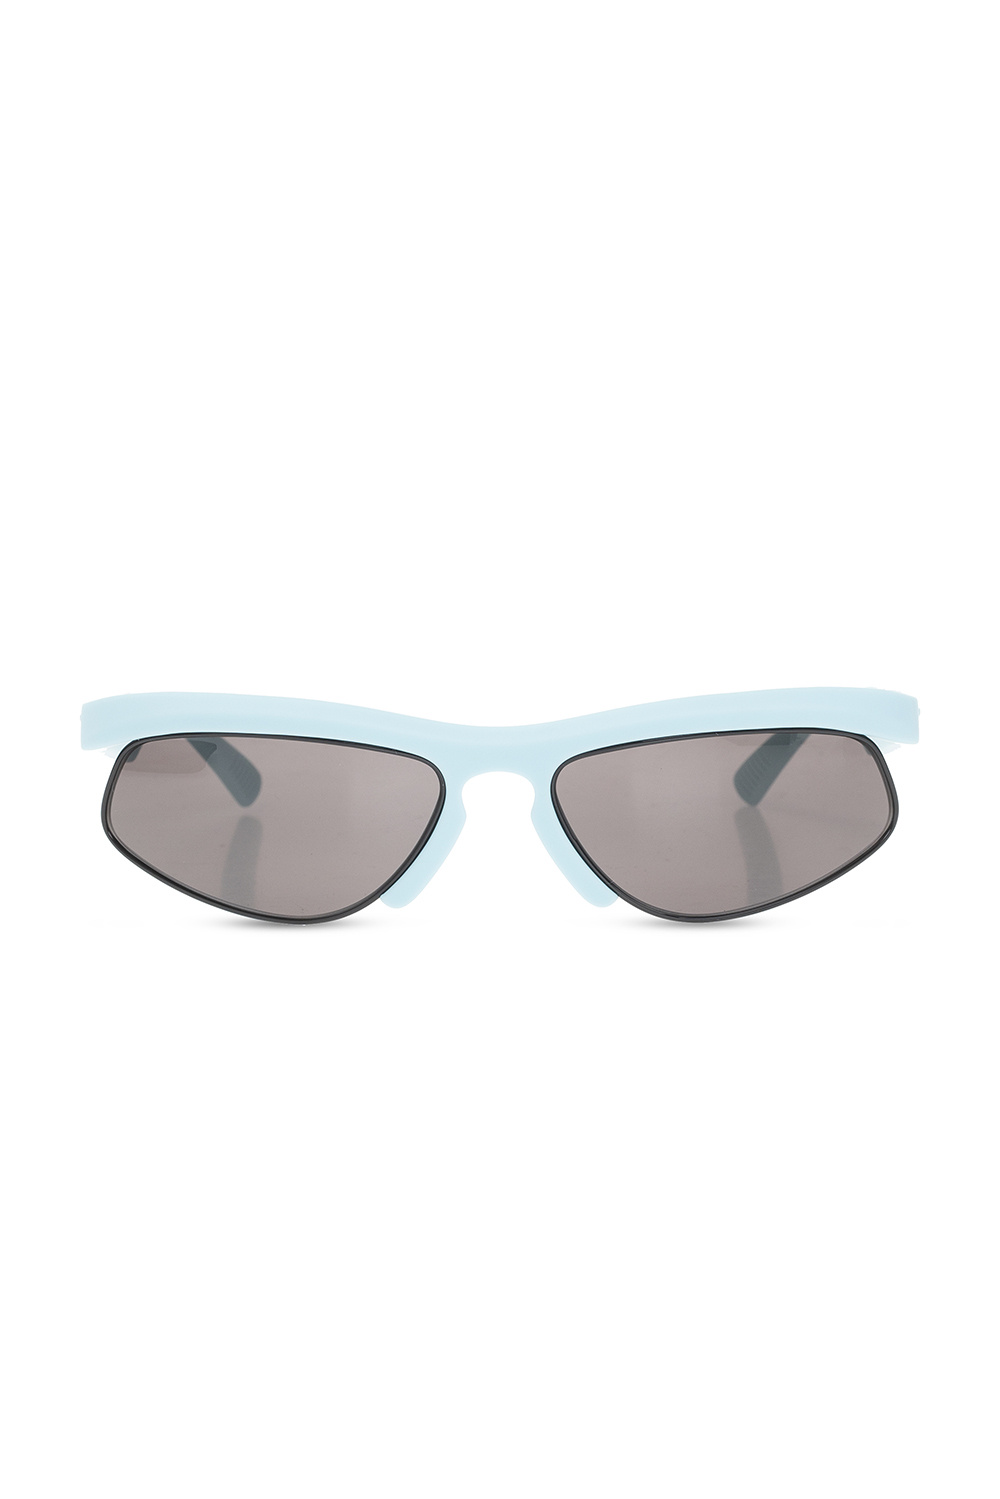 Bottega Veneta Women sunglasses with logo